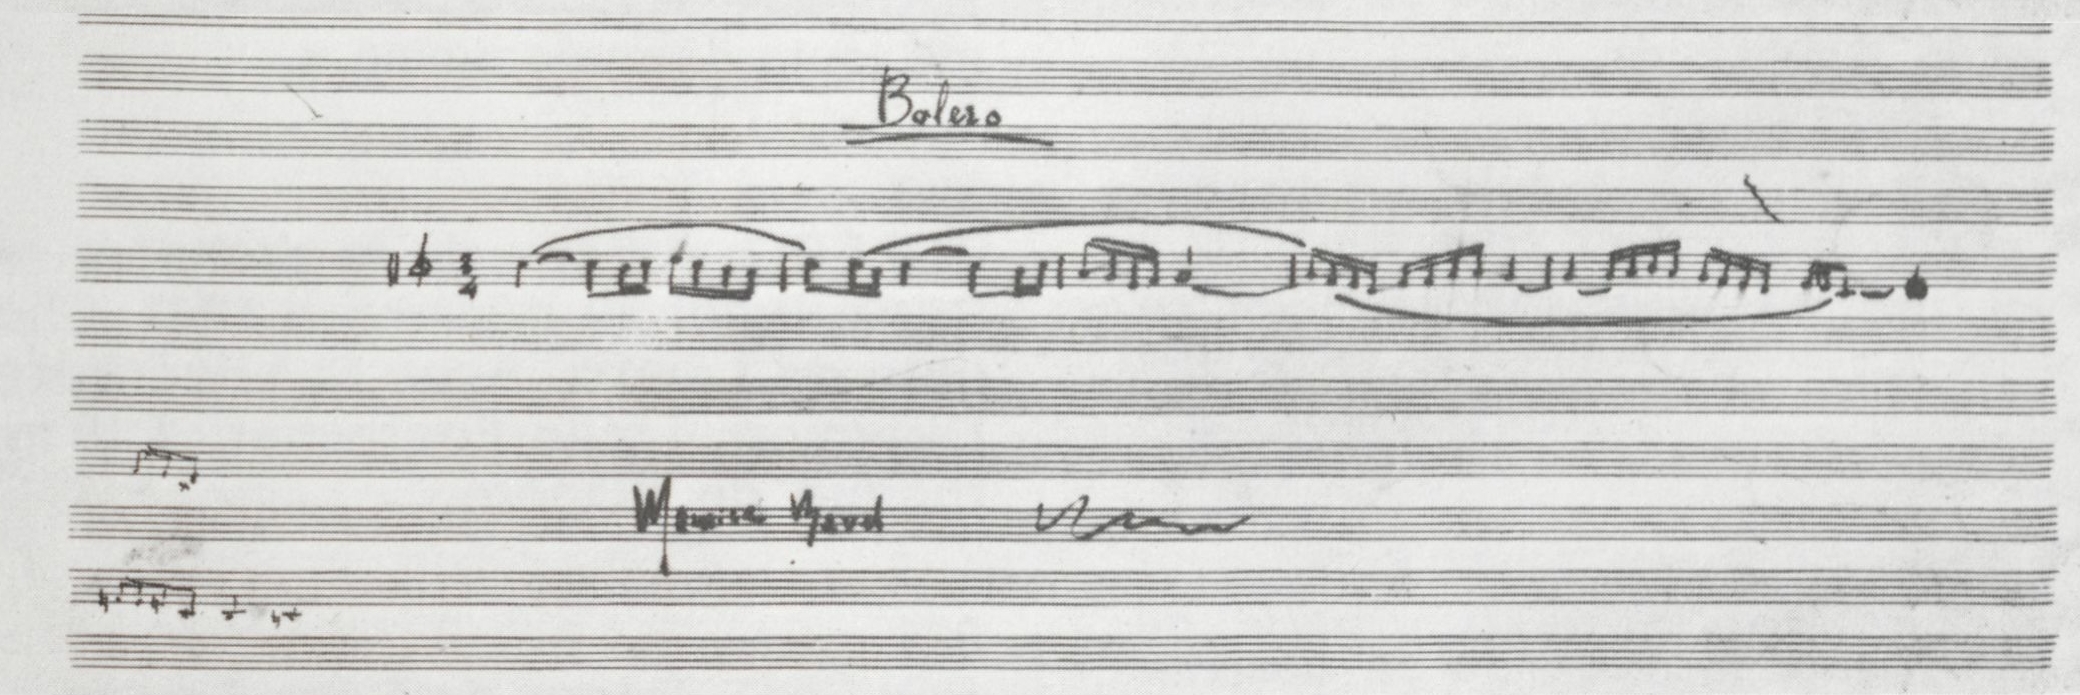 Manuscrit signé de Maurice Ravel reproduisant les cinq premières mesures du Boléro, source: http://gallica.bnf.fr/ark:/12148/bpt6k6533919c/f79, gallica, BNF